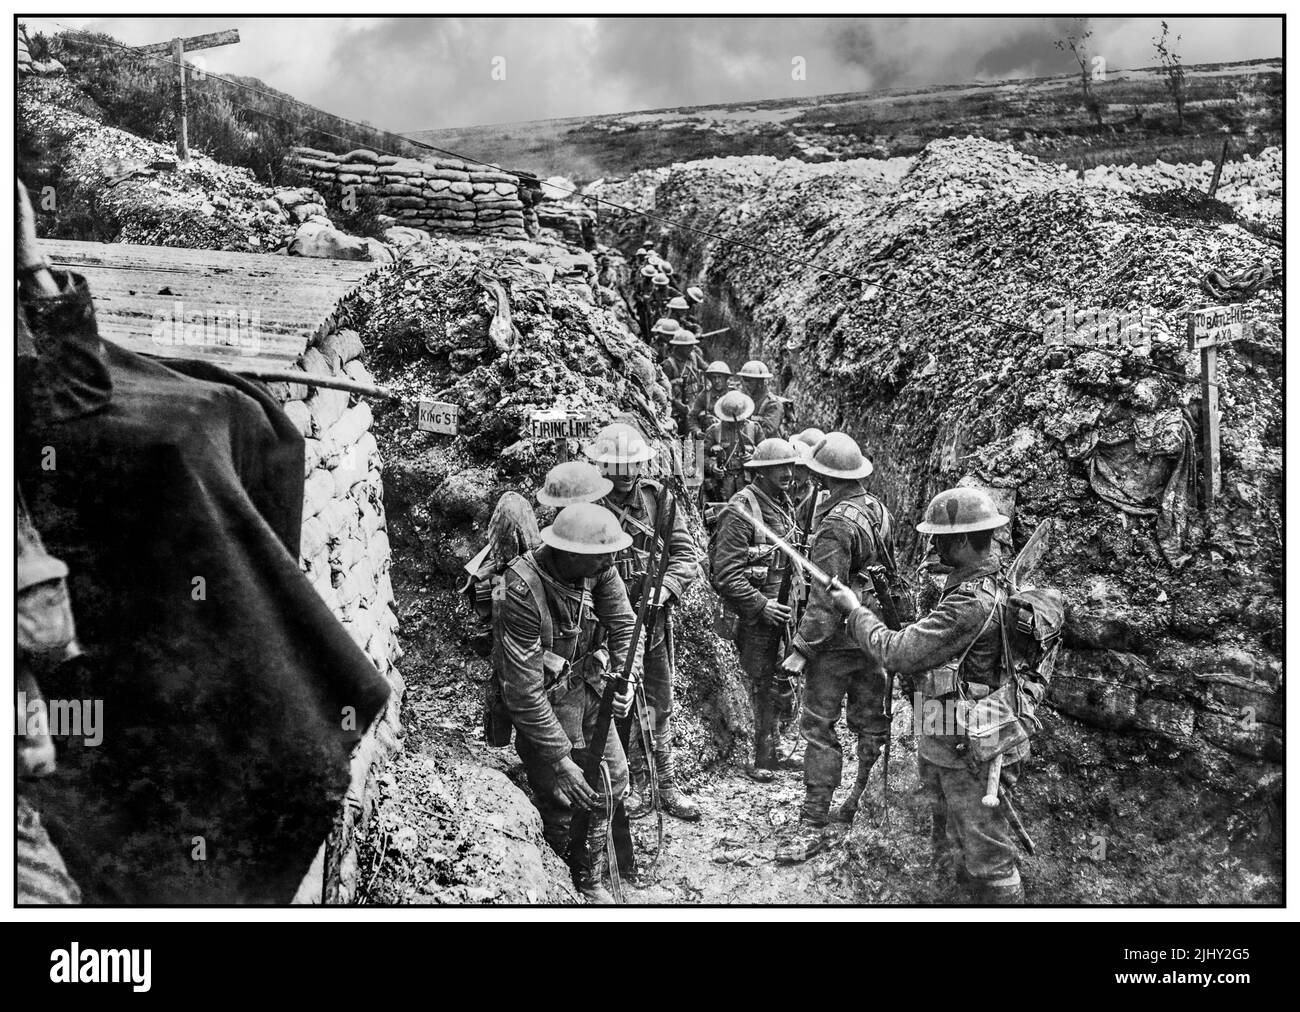 WW1 Schlacht von Albert : Britische Soldaten des Bataillons von 1., die Lancashire Fusiliers, die vor dem Angriff auf Beaumont Hamel Bajonette fixierten.Schlacht an der Somme. Soldaten trugen ‘Kampfbefehl’, mit dem Haversack anstelle des Rudel und mit dem gerollten Erdblatt, das am Gürtel unter dem Mistkinn befestigt war, der Rationen enthielt. Der Offizier im Vordergrund (rechts) trägt die Uniform anderer Ränge, um weniger auffällig zu sein. Westfront Weltkrieg 1 Erster Weltkrieg Der Große Krieg Stockfoto